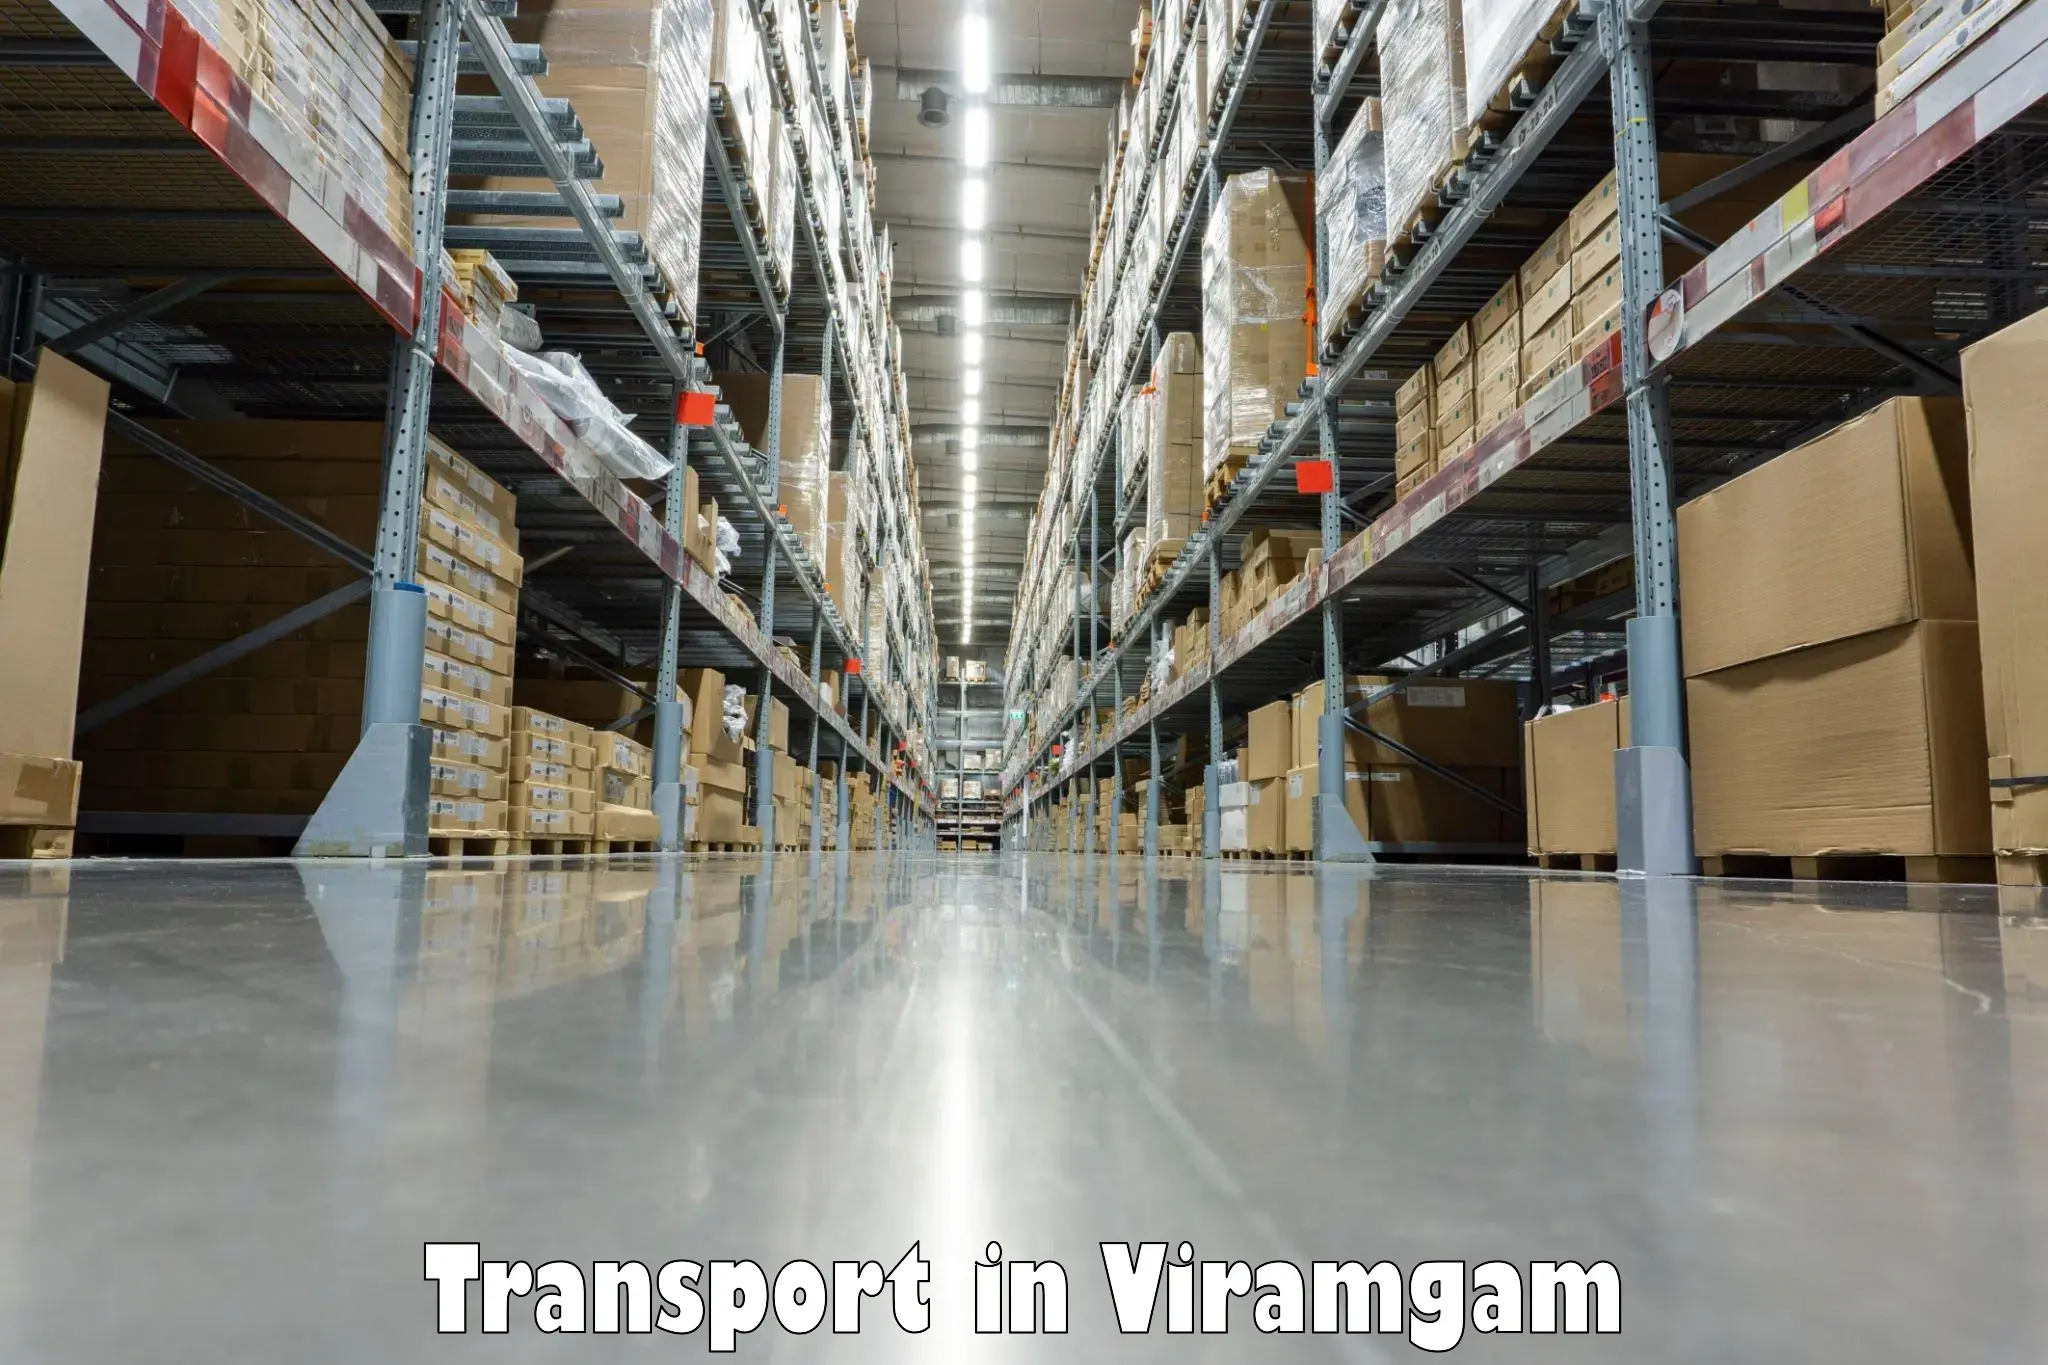 Intercity transport in Viramgam